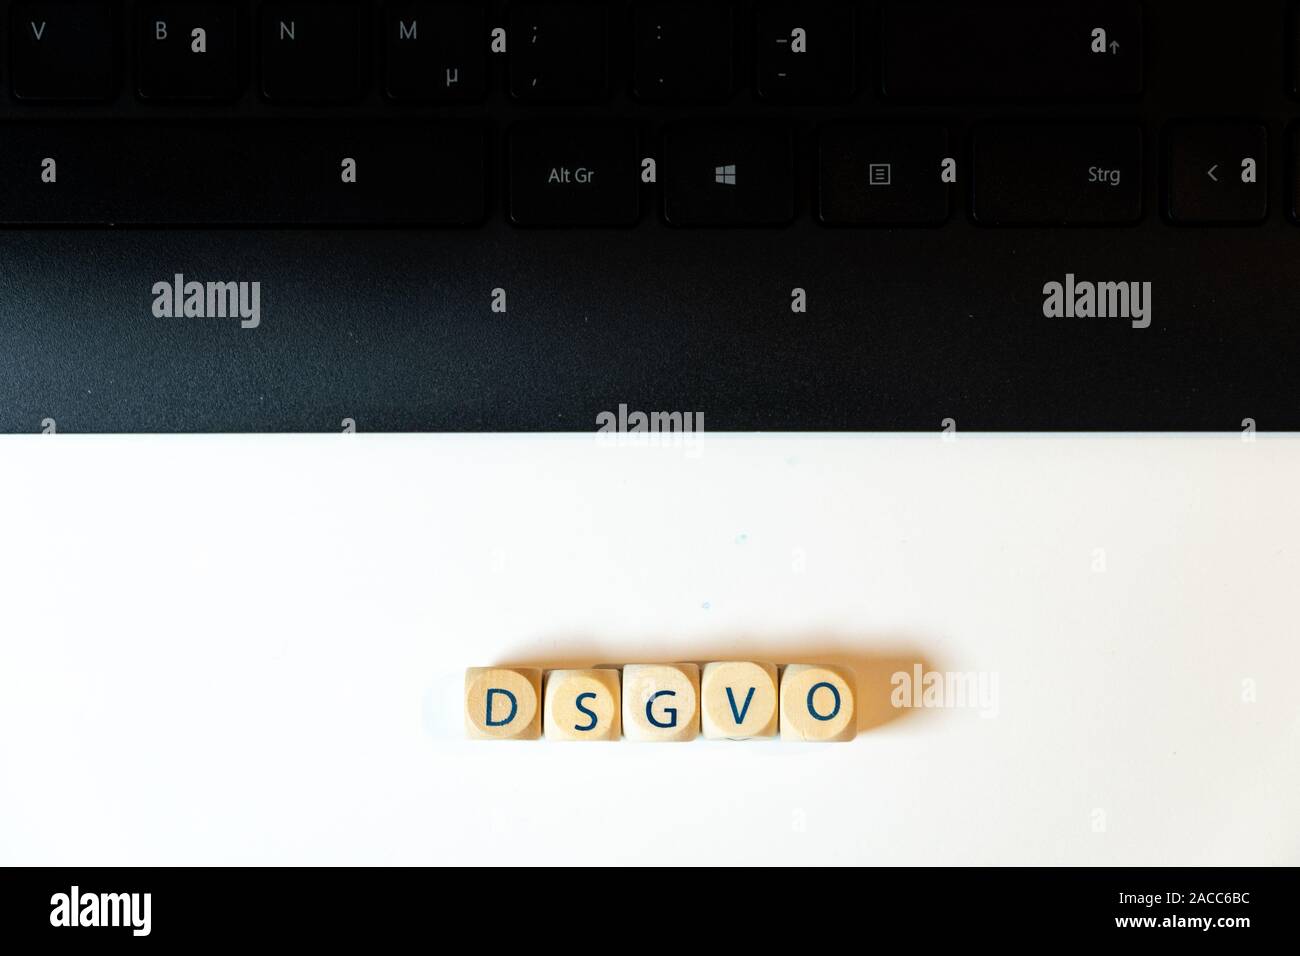 Holzwürfel mit dem deutschen Wort "SGVO' für das Bipr zusammen mit einer Tastatur in Schwarz auf weißem Hintergrund - Ansicht von oben Stockfoto